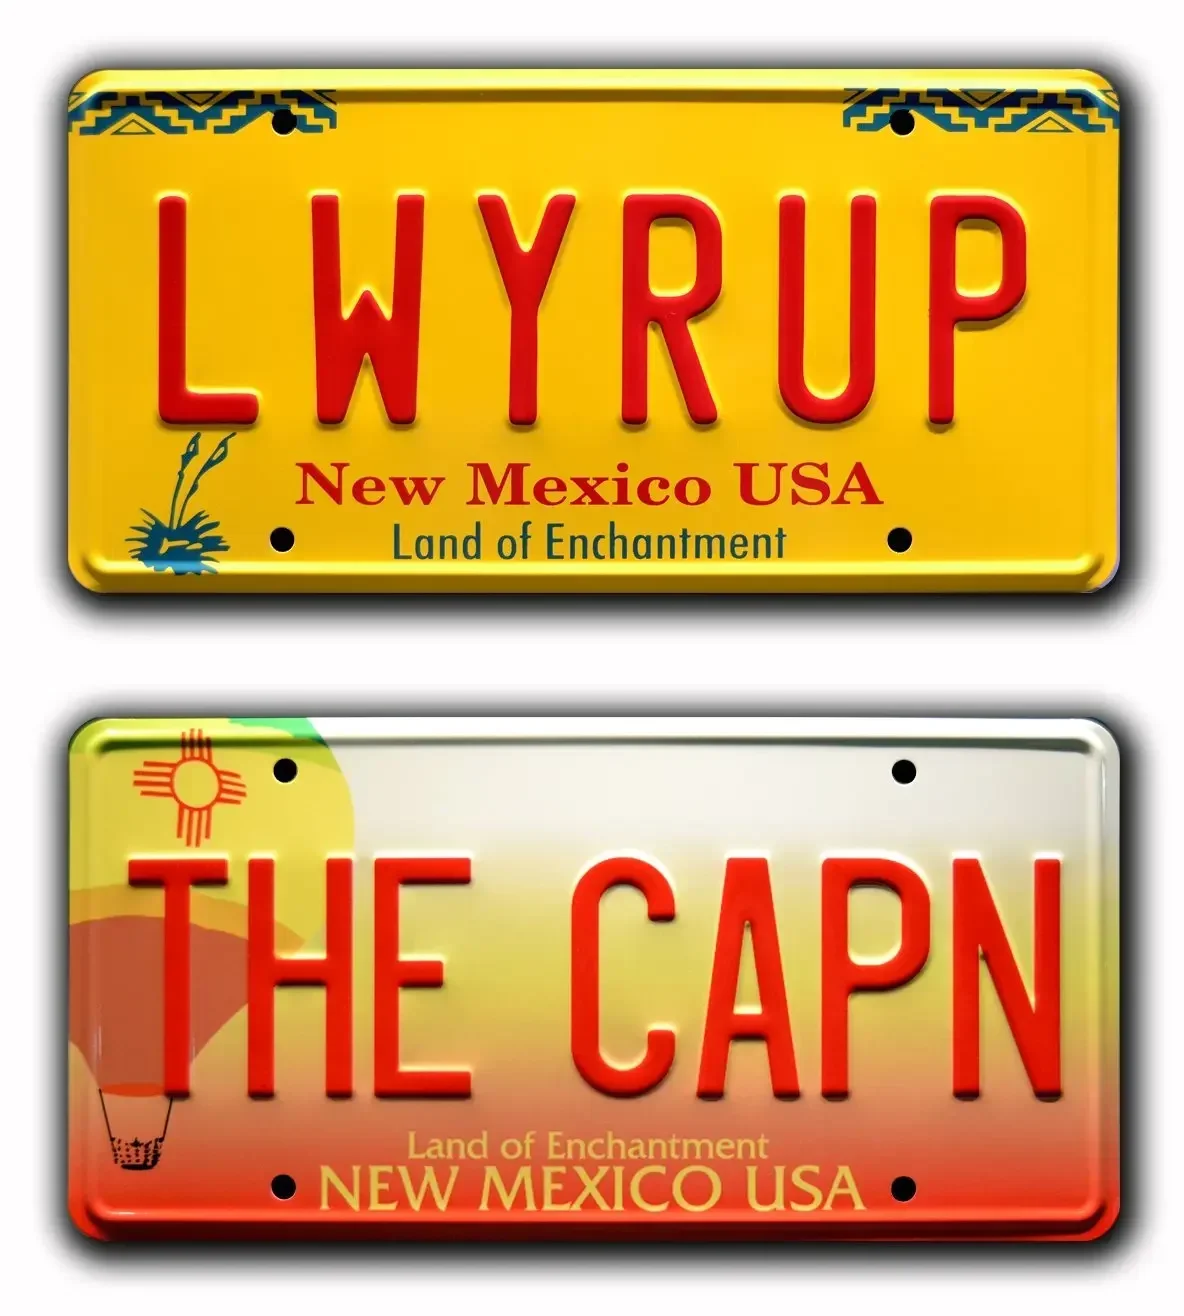 

Печать LWYRUP + The CAPN | Металлические номерные знаки, металлические рамки для номерных знаков, передний номерной знак автомобиля